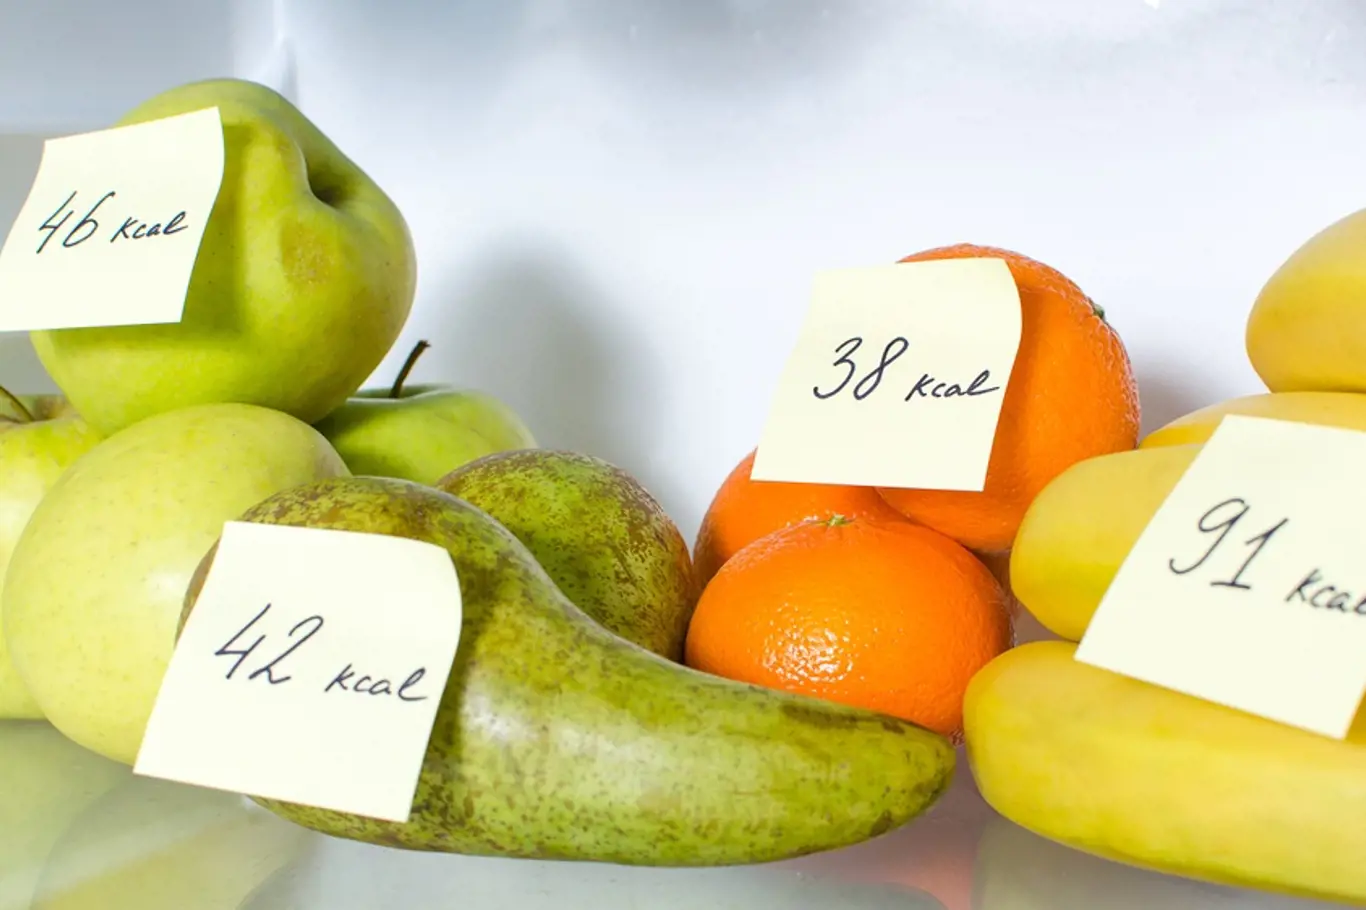 Některé druhy ovoce bychom měli konzumovat jako dezert - jsou totiž velmi kalorické